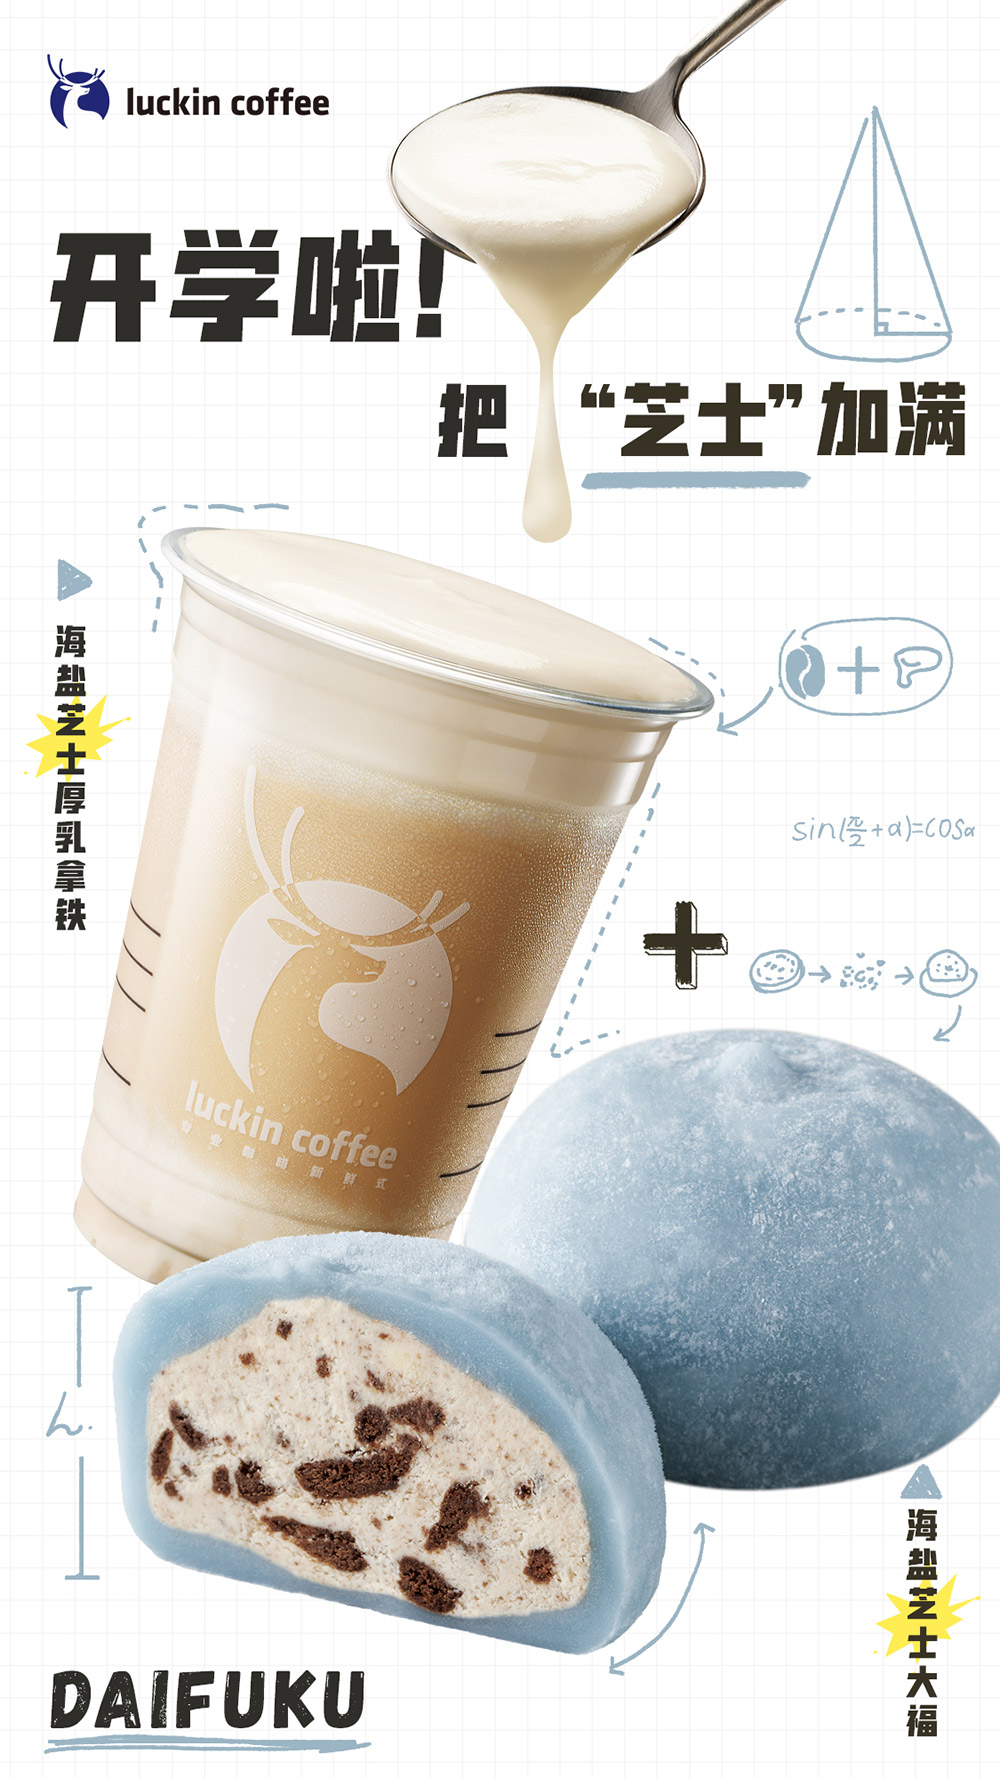 24张瑞幸咖啡的产品海报设计!